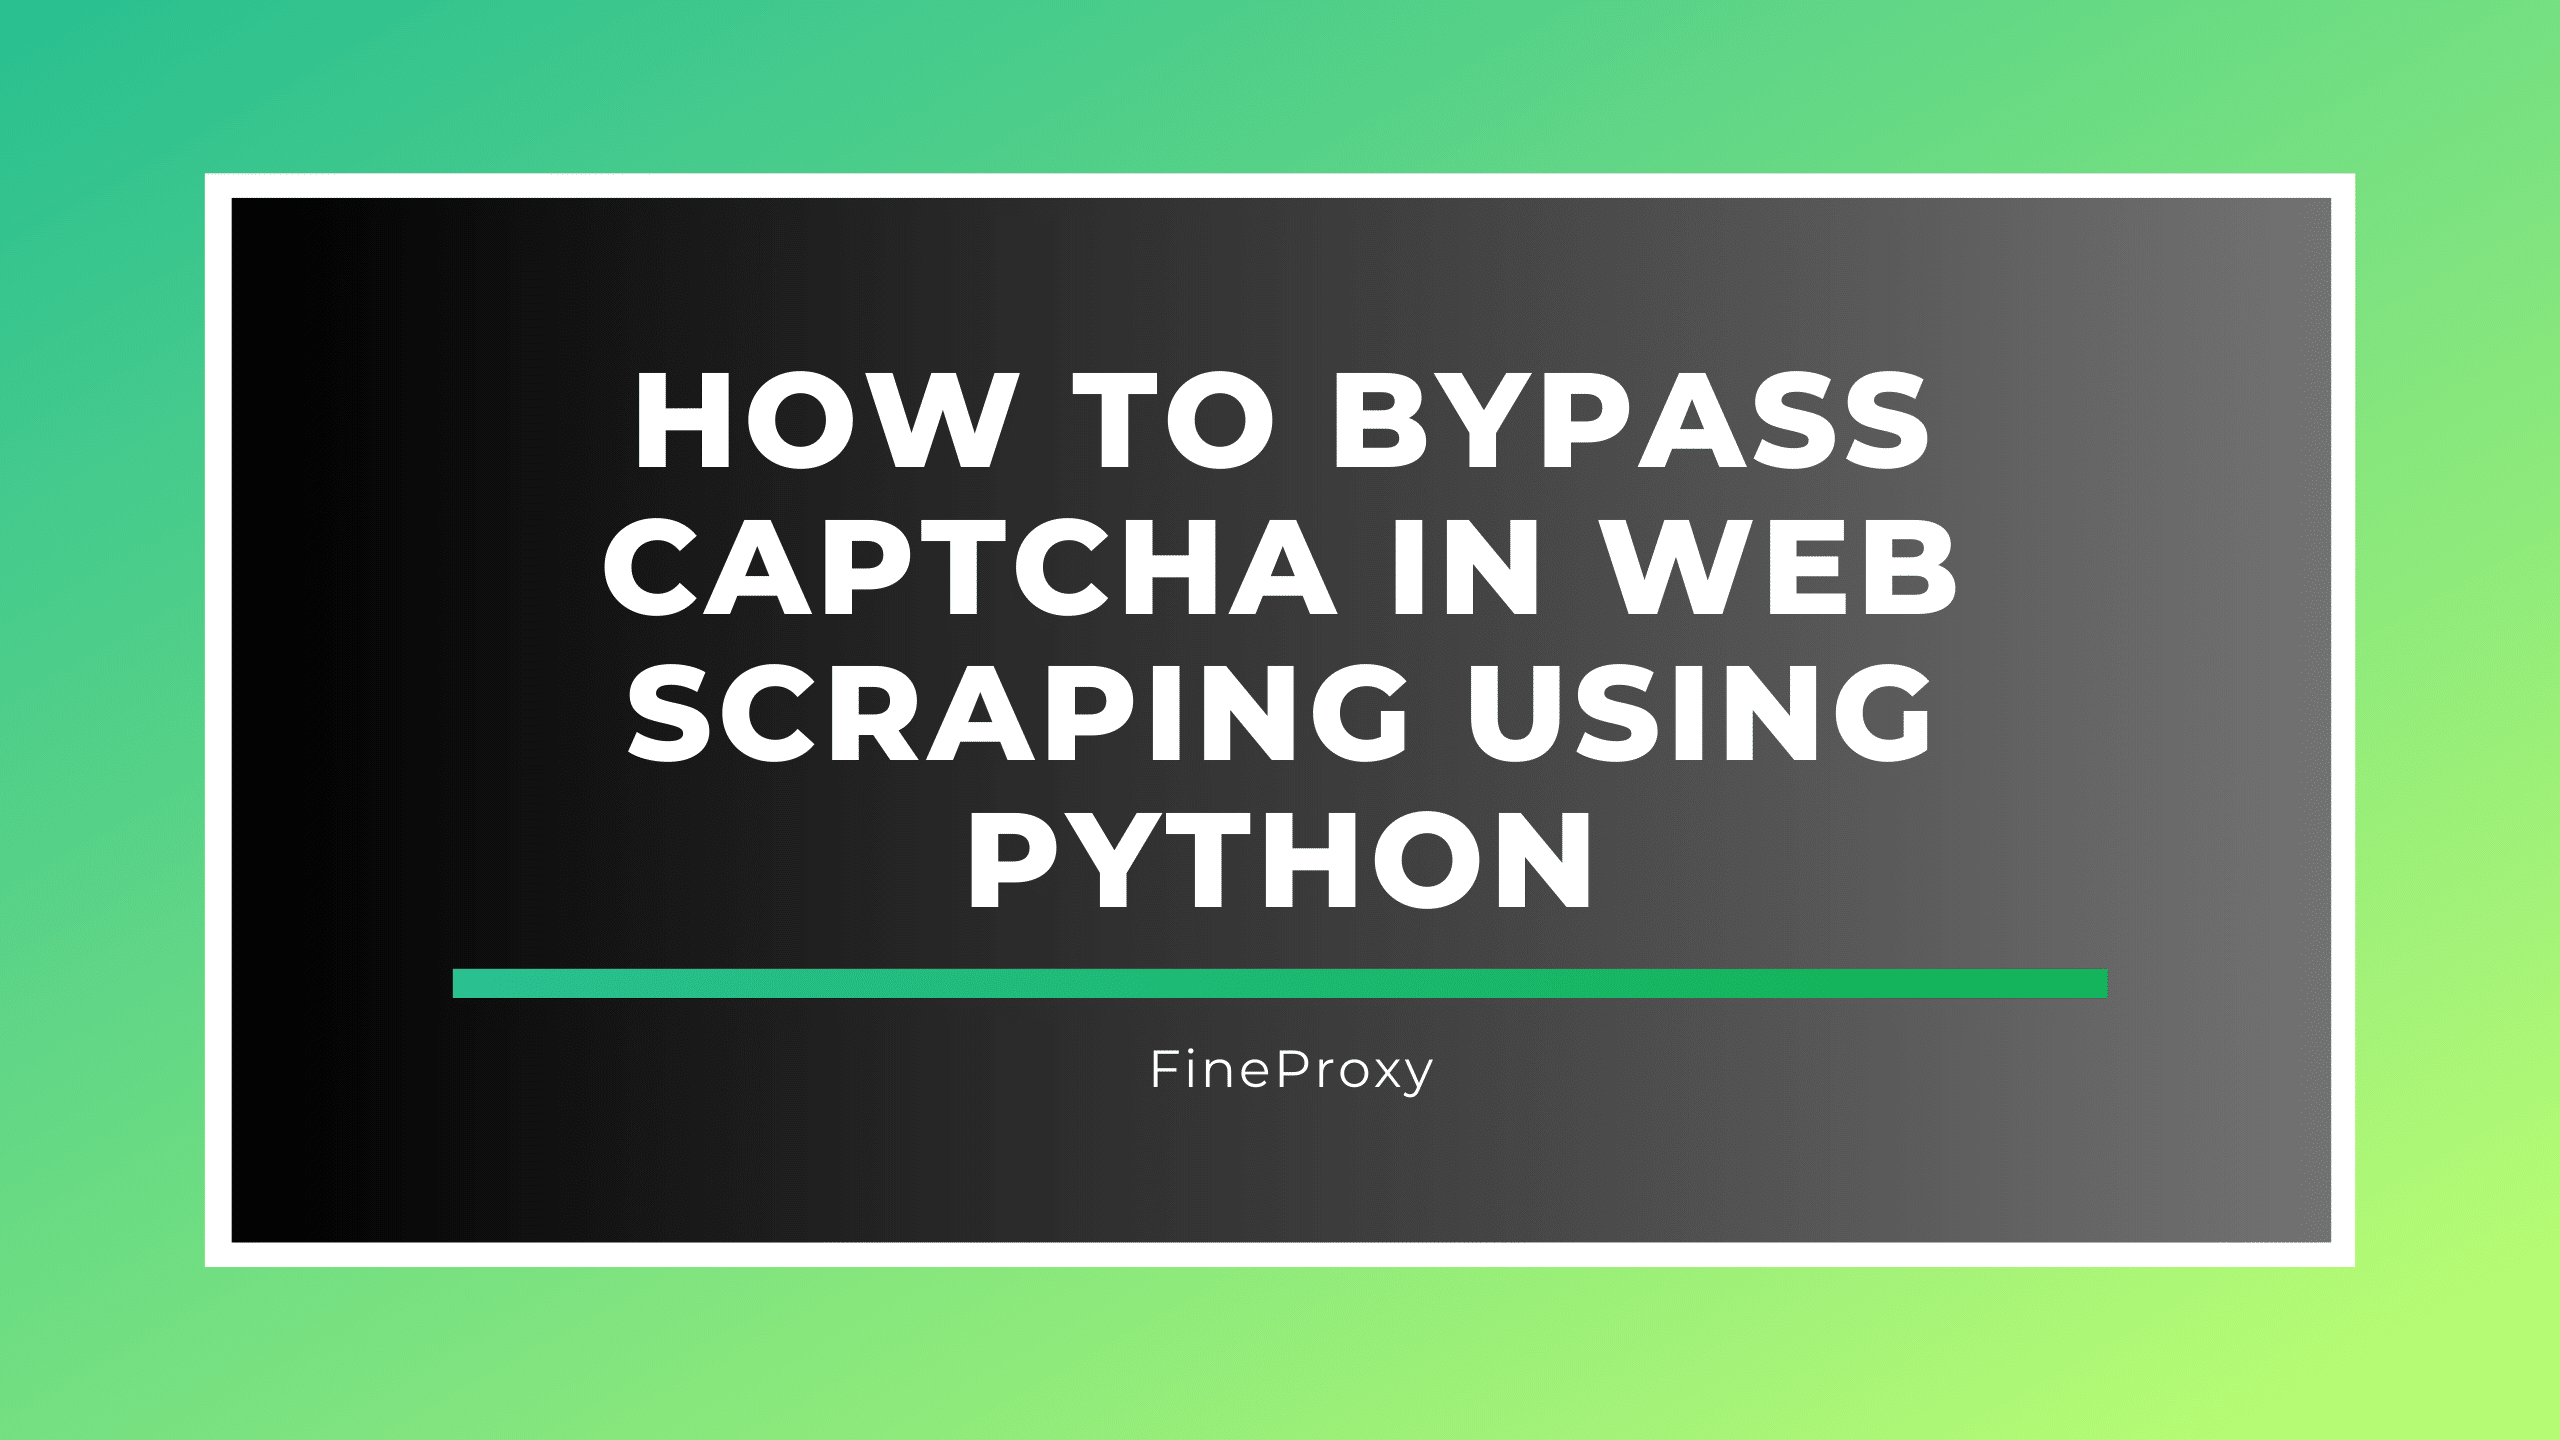 Jak ominąć CAPTCHA podczas skrobania sieci za pomocą Pythona